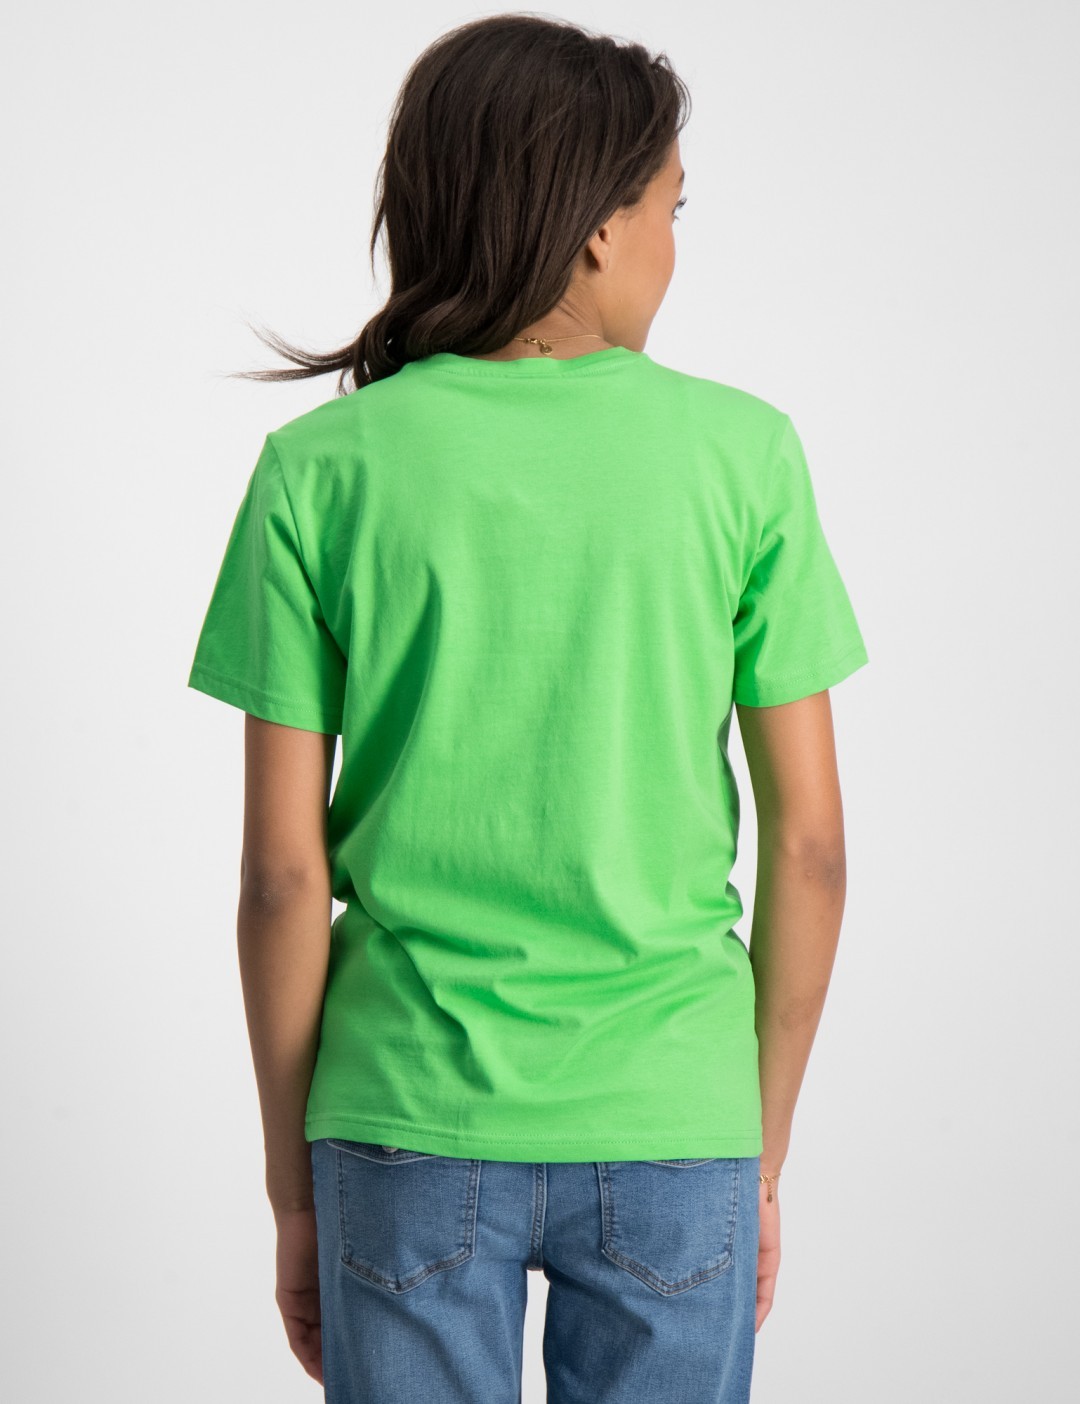 Grün Crewneck T-Shirt für Mädchen | Kids Brand Store